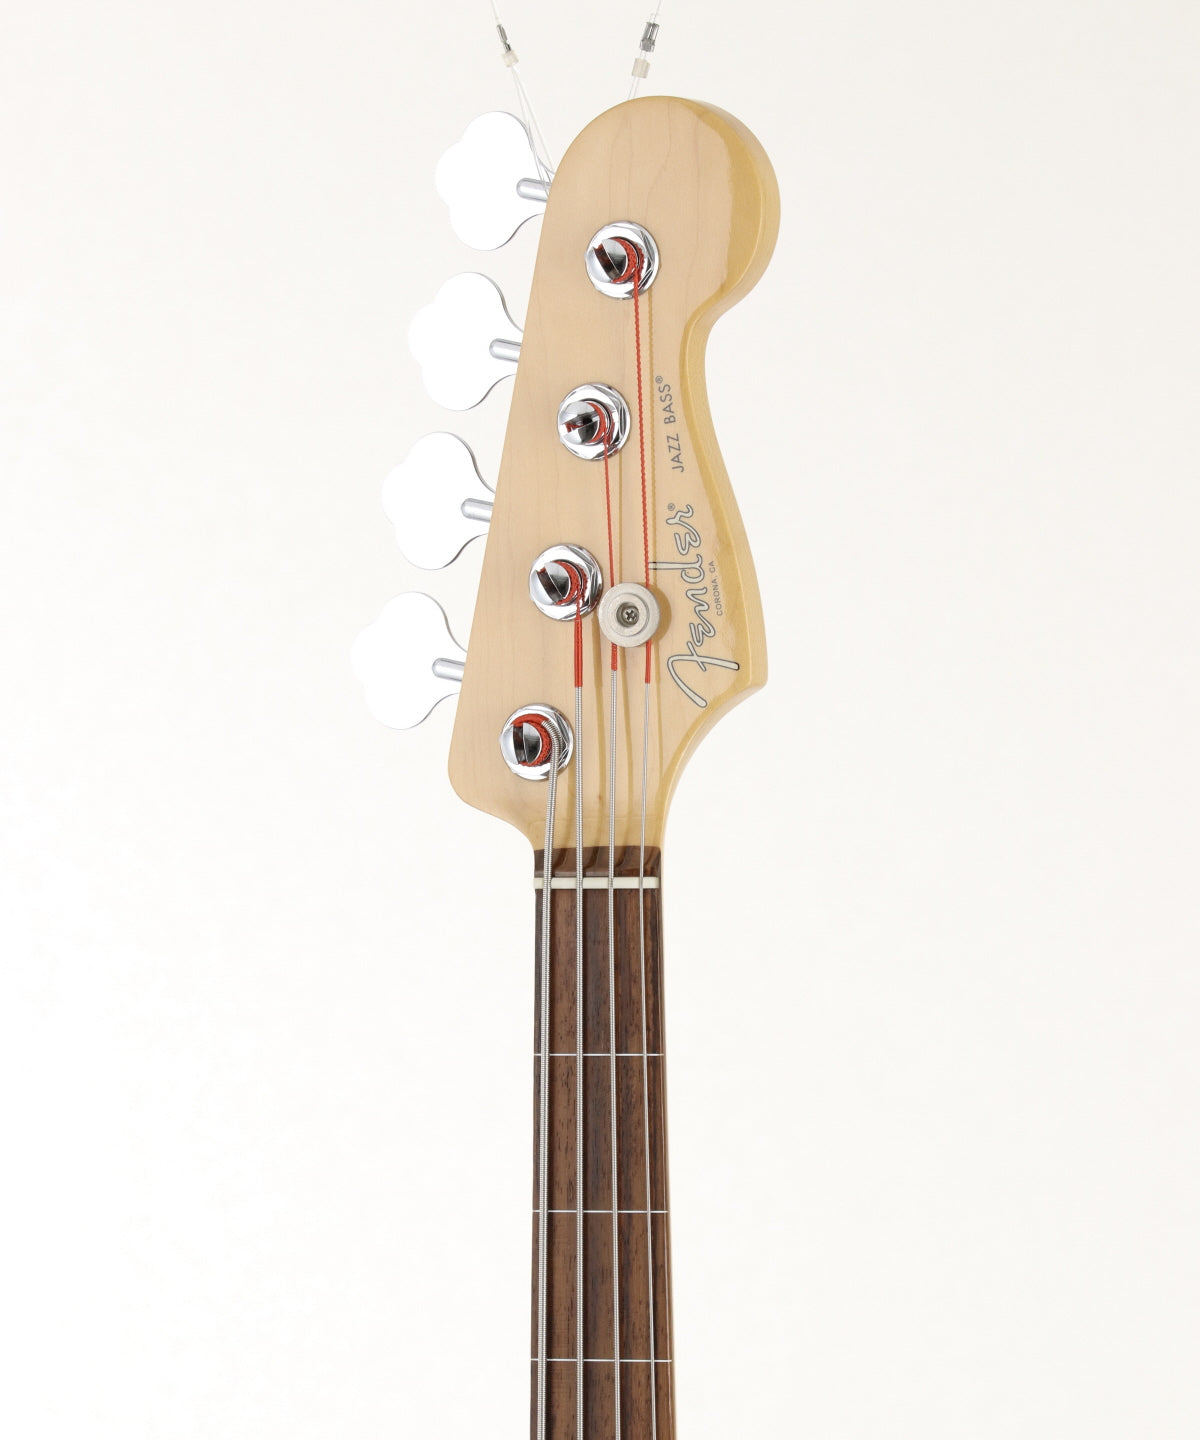 [SN US16066954] USED Fender Usa / AM PRO Jazz Bass Fretless 3Tone Sunburst [03]